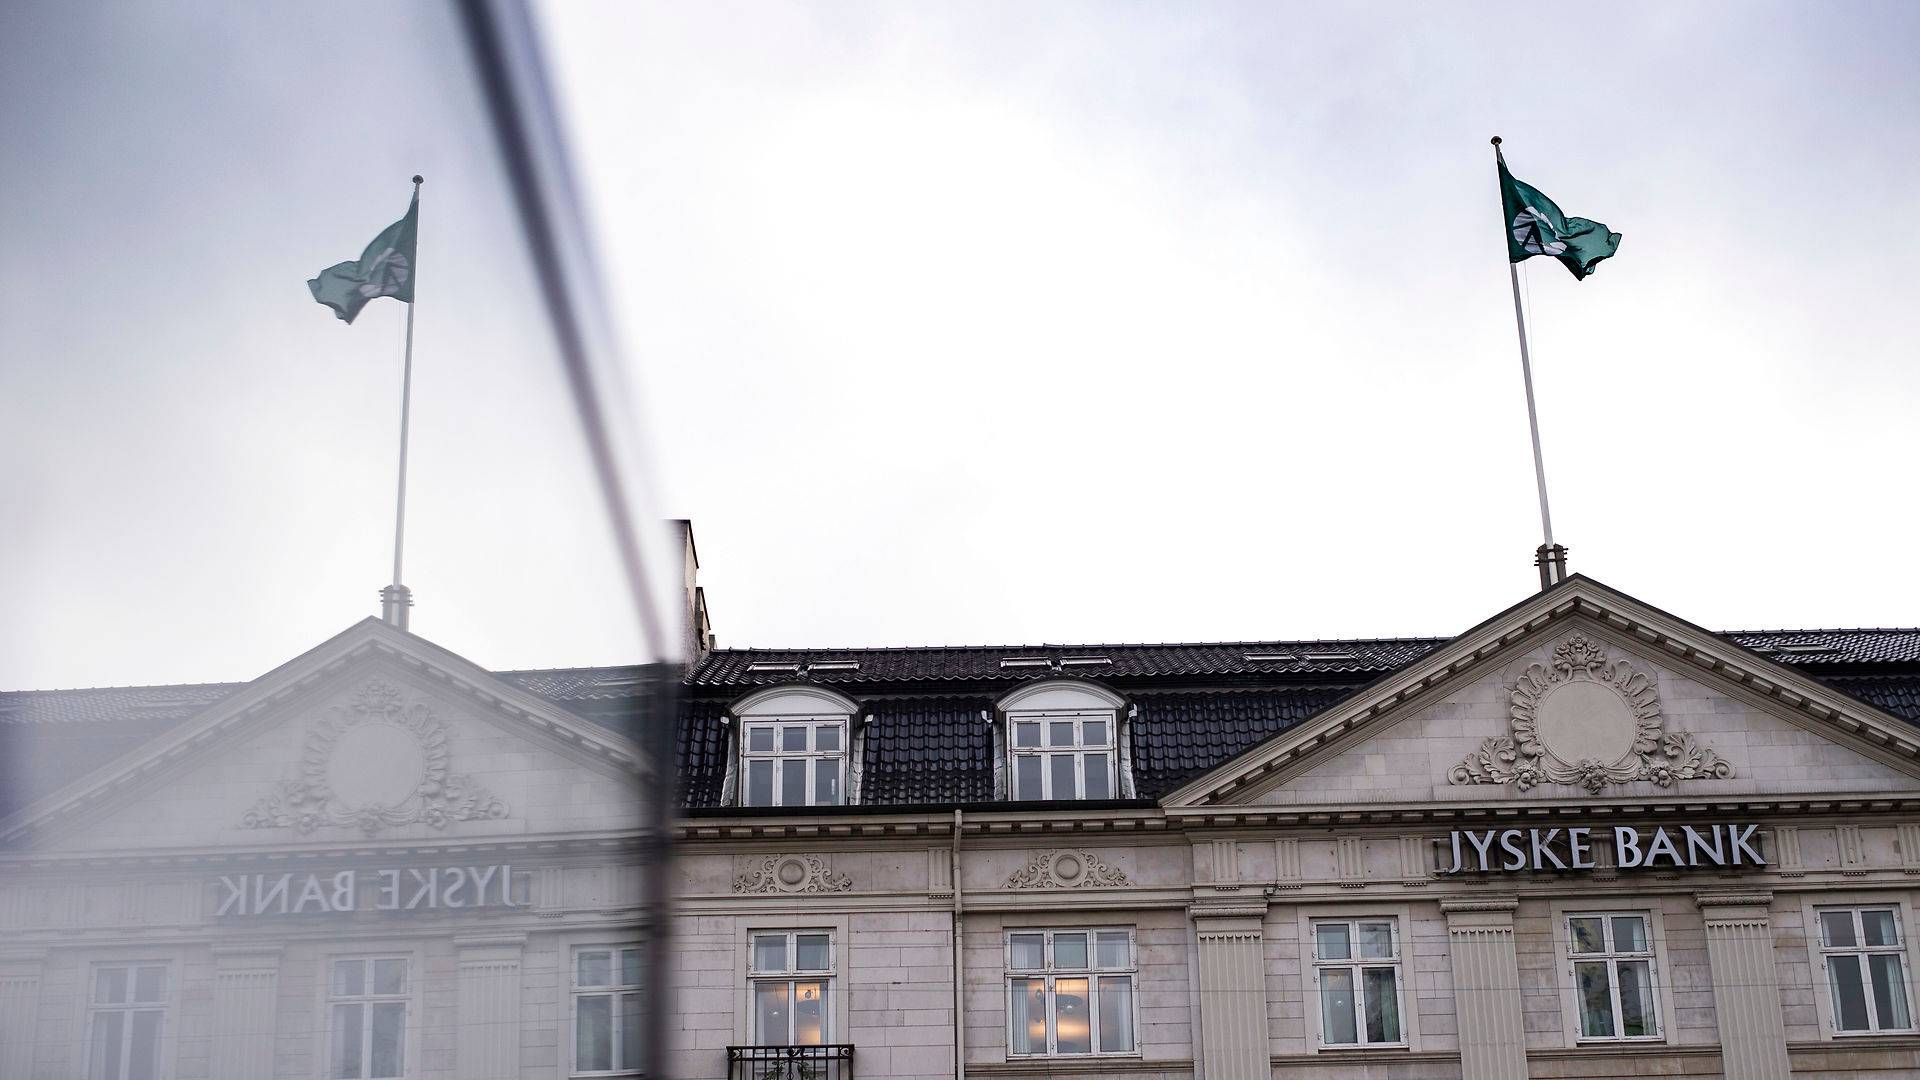 Bankanalytiker Anders Vollesen fra Jyske Bank ser ikke de nye krav eleminere al usikkerhed i forbindelse med nye topchefudnævnelser. | Foto: Olivia Loftlund/Ritzau Scanpix